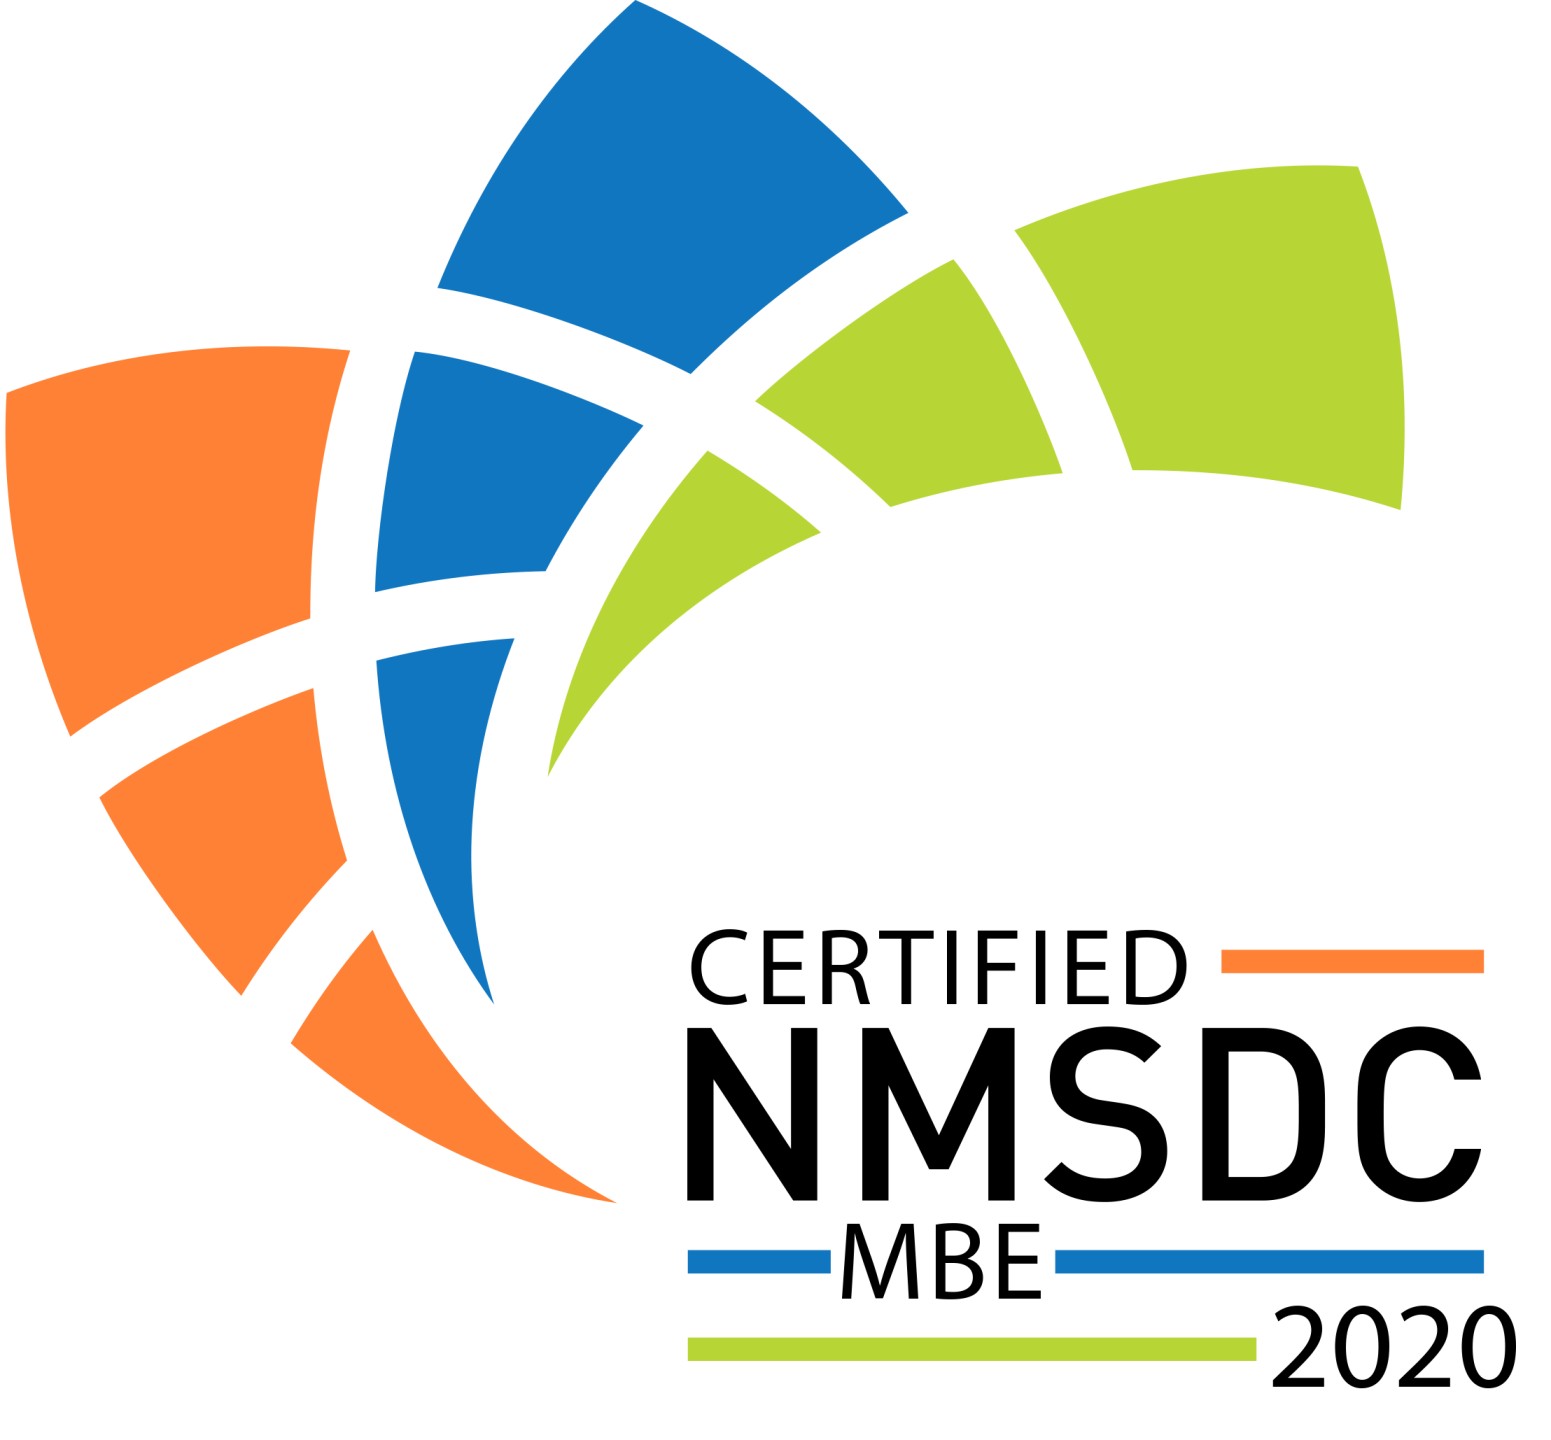 NMSDC Logo